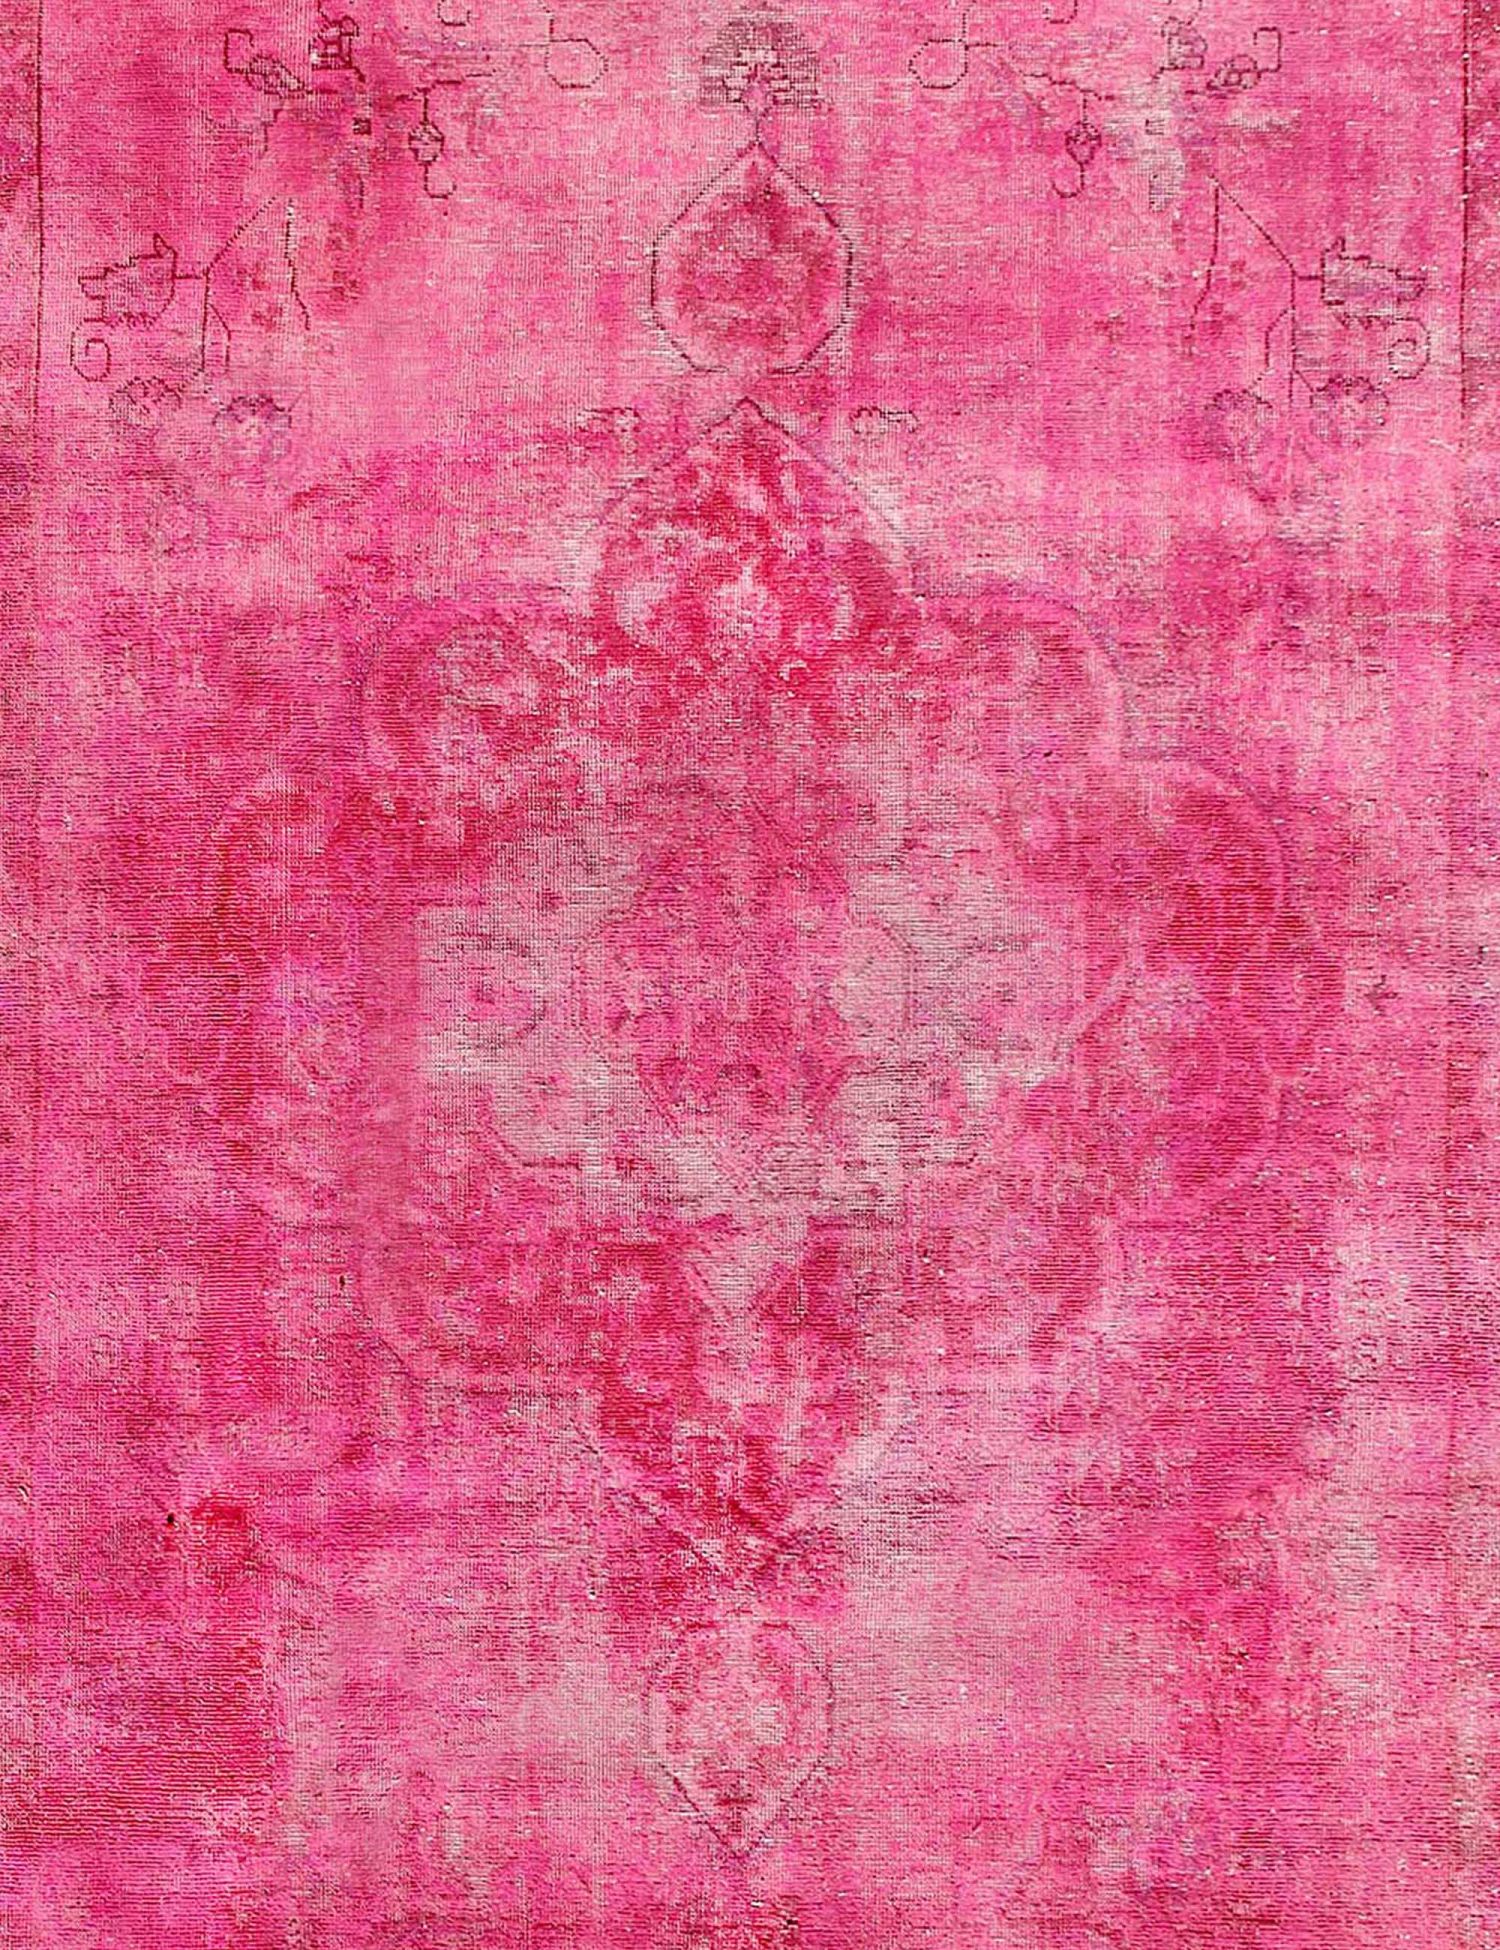 Quadrat  Vintage Teppich  rosa <br/>290 x 290 cm